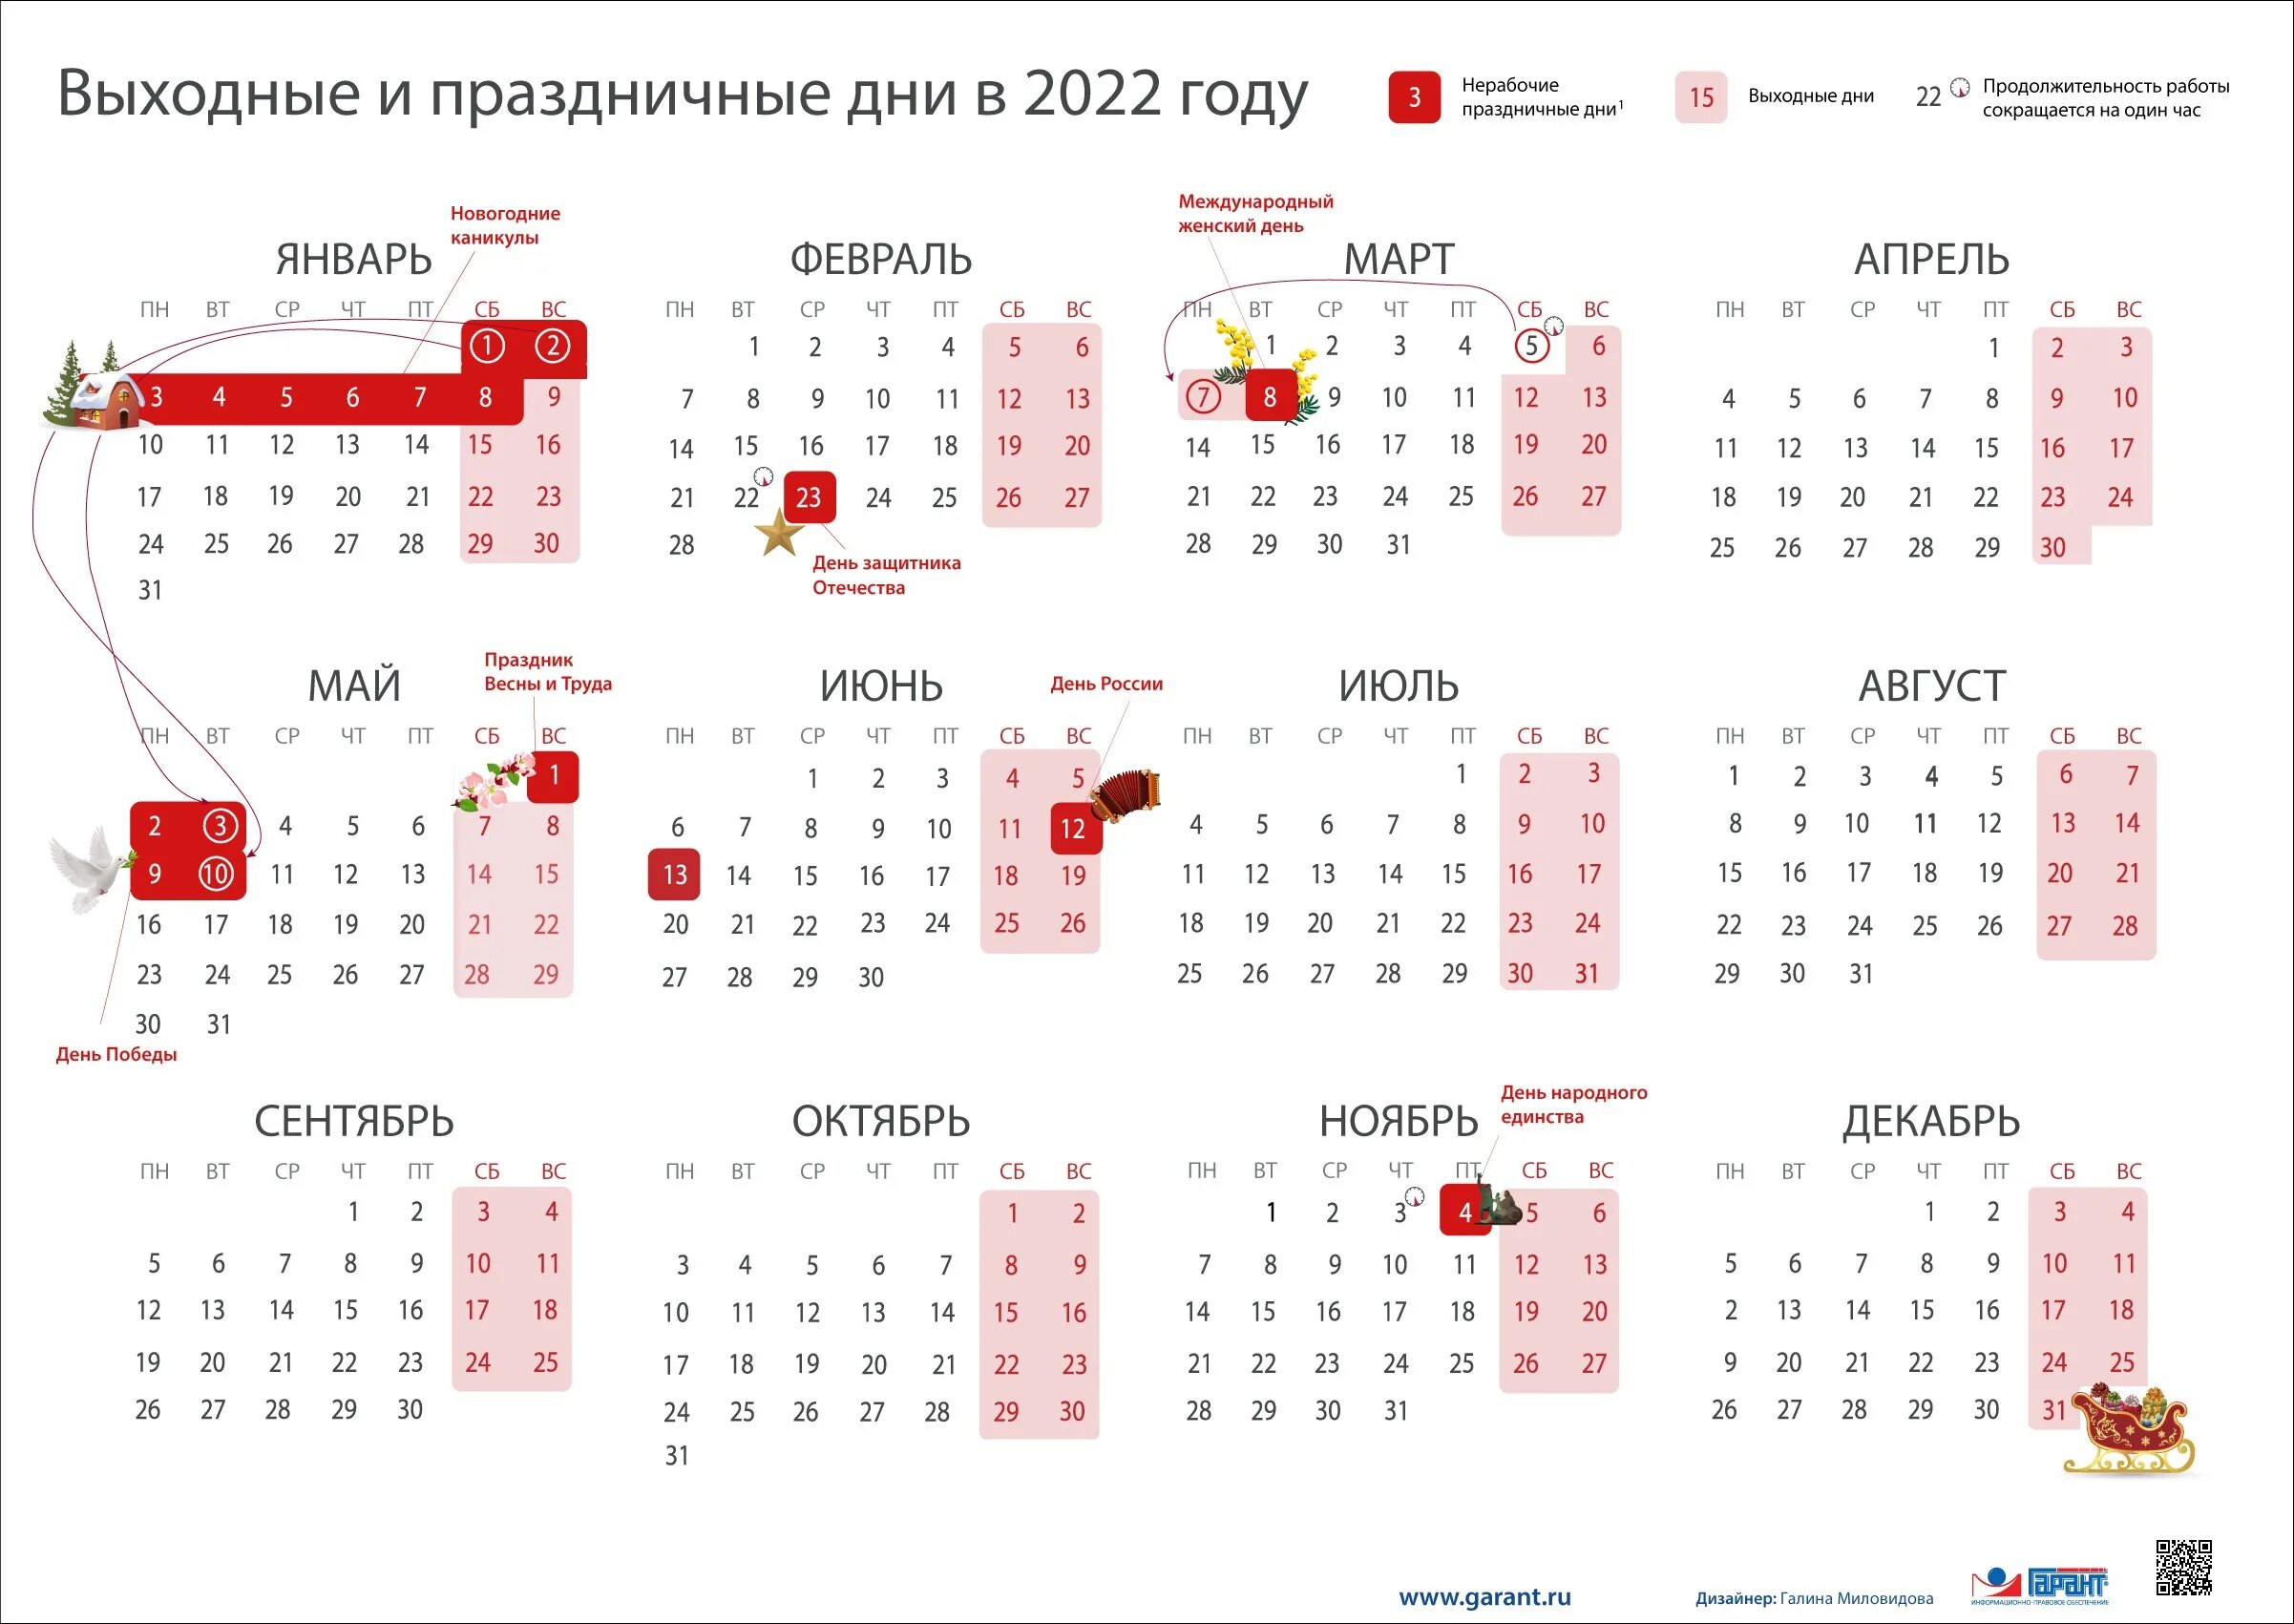 Выходный май. Календарь выходных и праздничных дней на 2022 год в России. Перенос праздников 2022 год утвержденный правительством РФ. Выходные и праздники в 2022 года в России нерабочие дни календарь. Выходные и праздничные дни в феврале 2022 года в России.